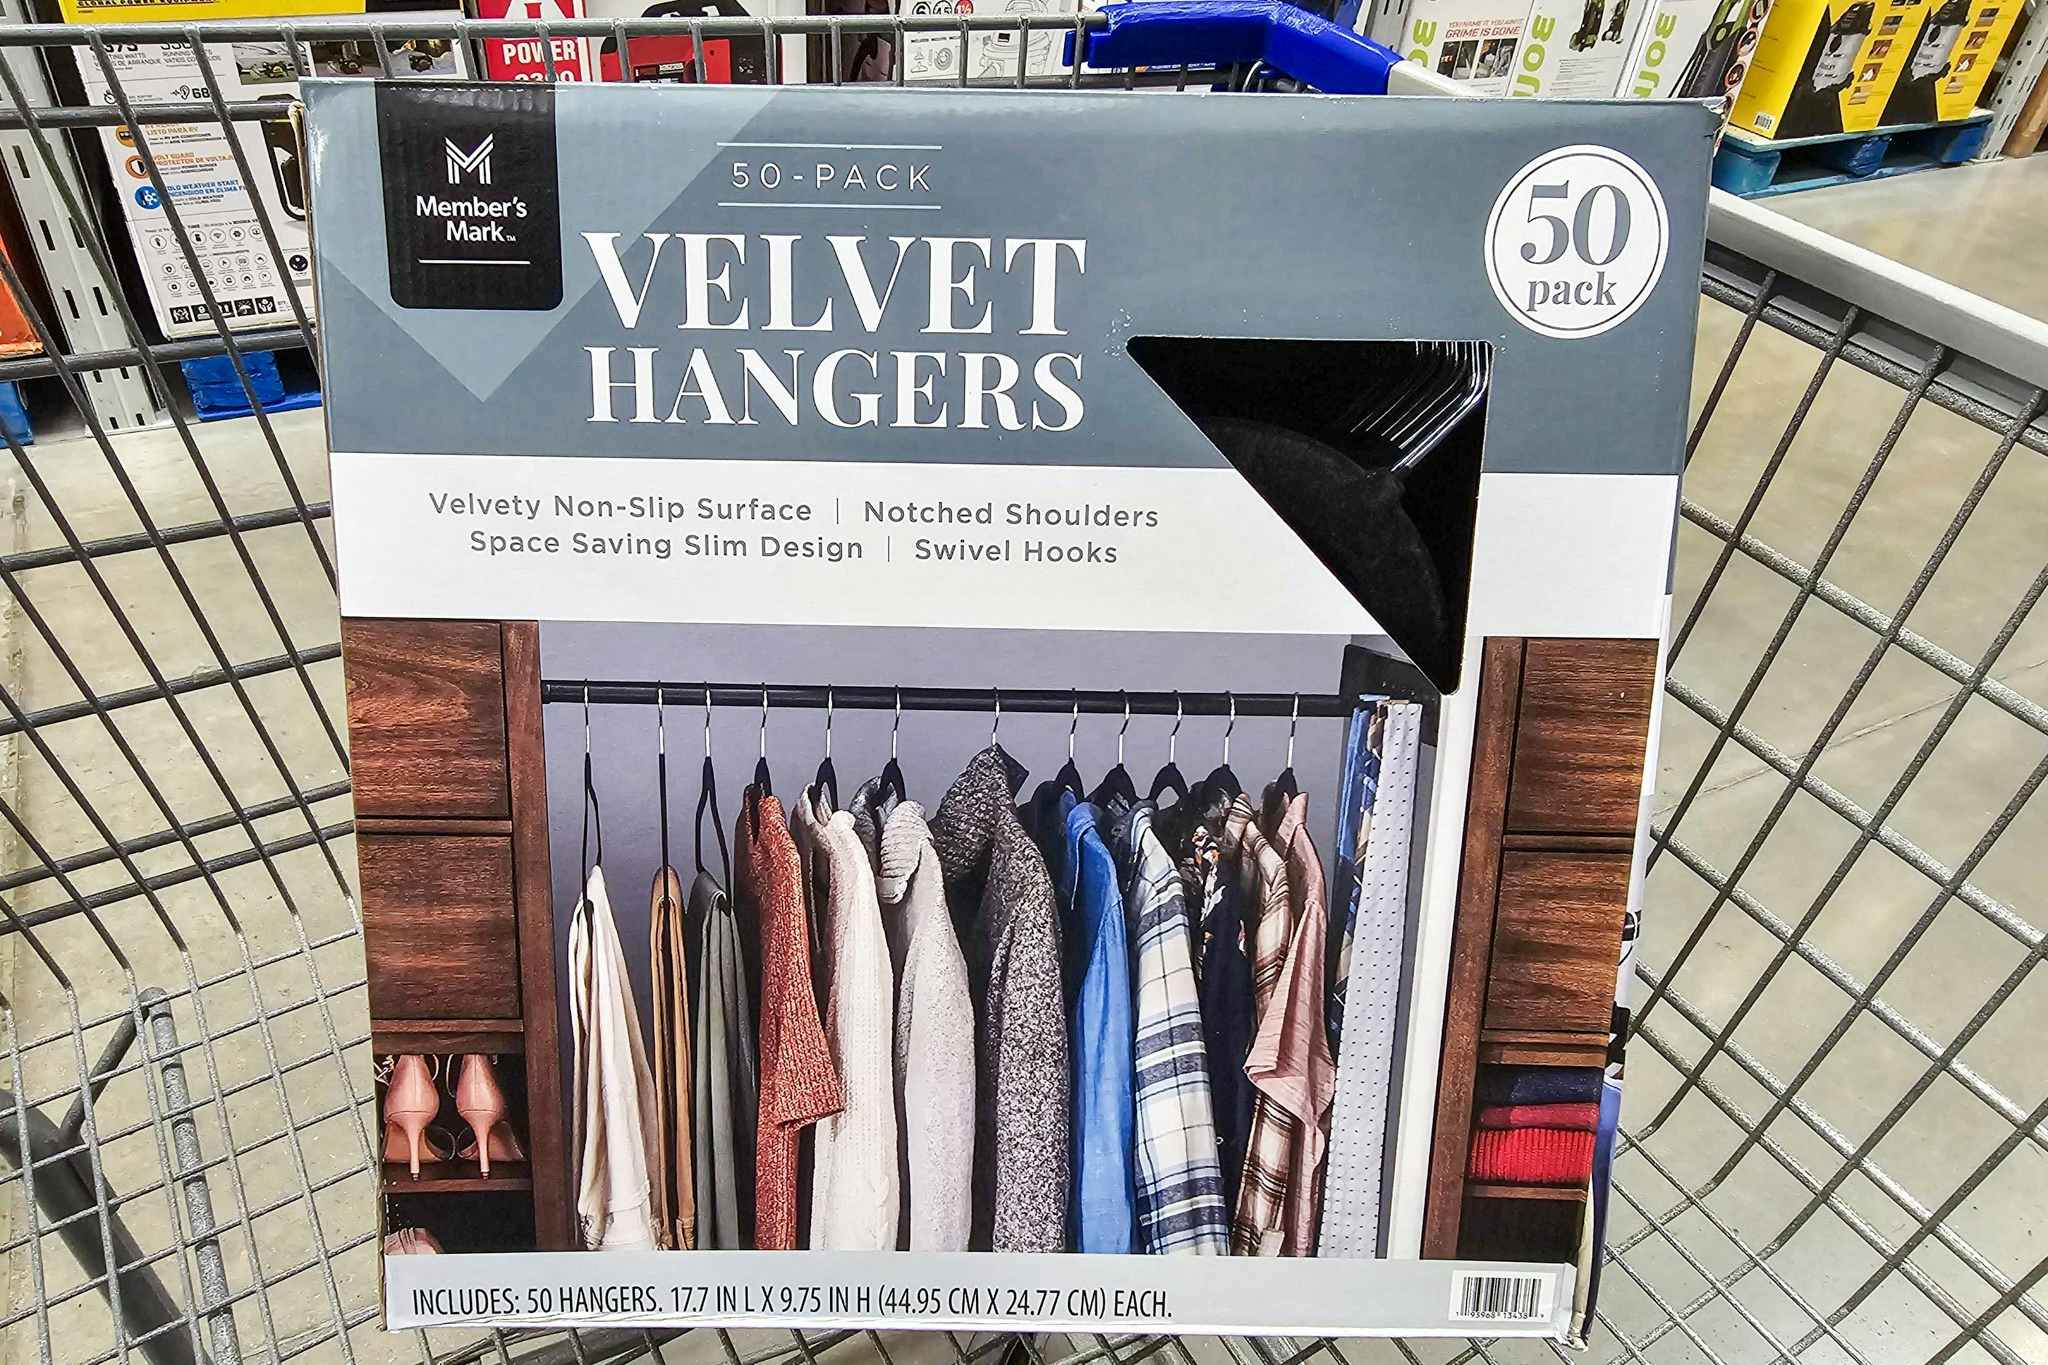 $12.98 Velvet Hanger 50-Pack at Sam's Club — Cheaper Than Amazon